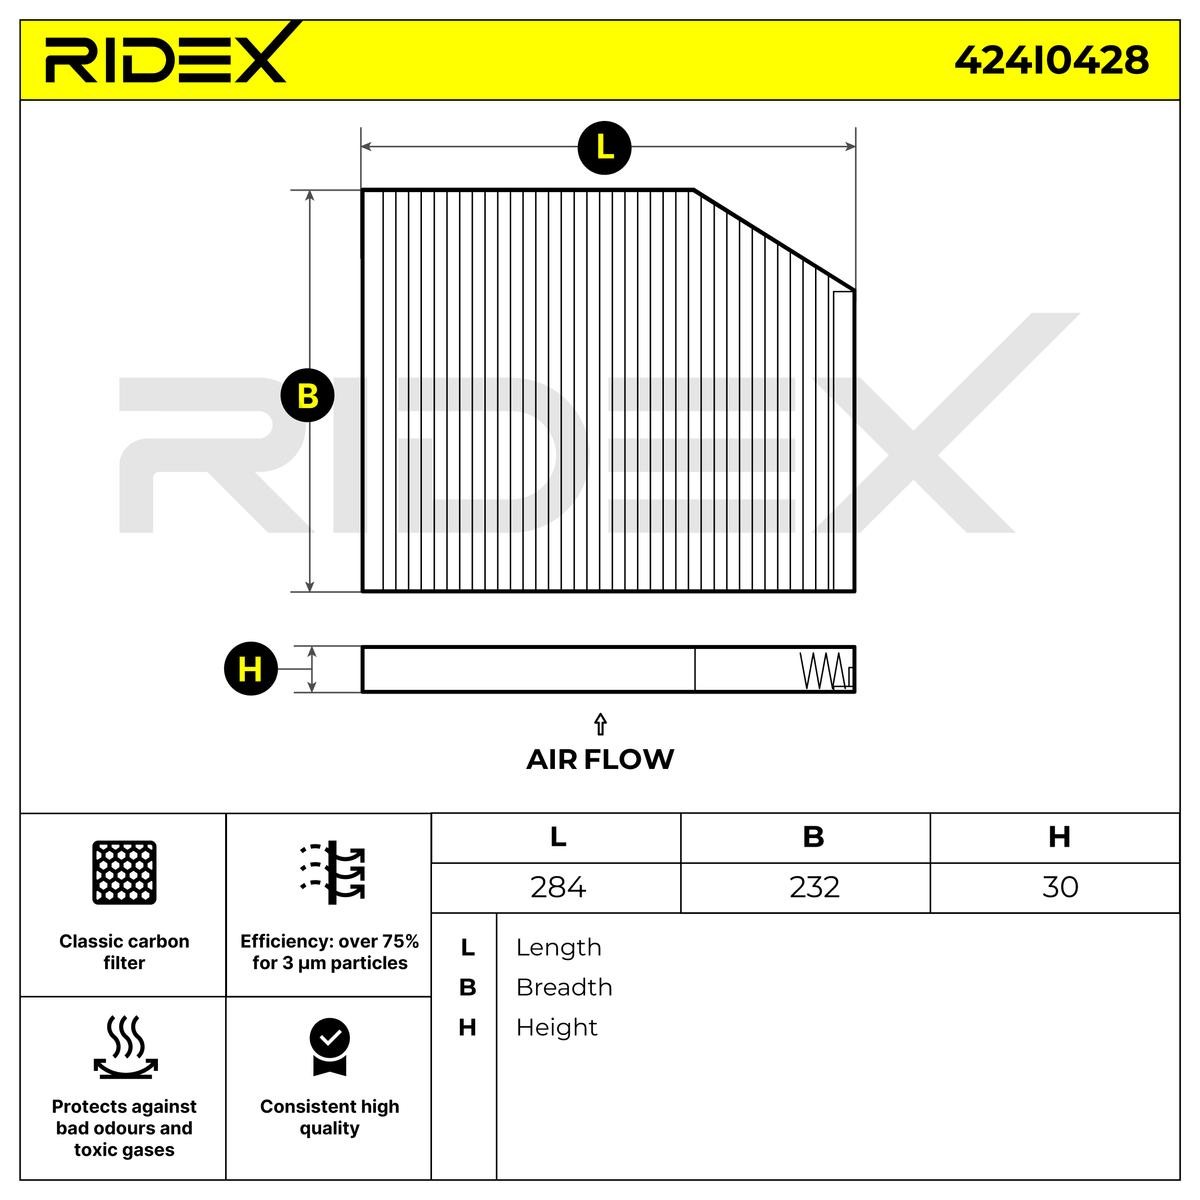 OEM-quality RIDEX 424I0428 Air conditioner filter